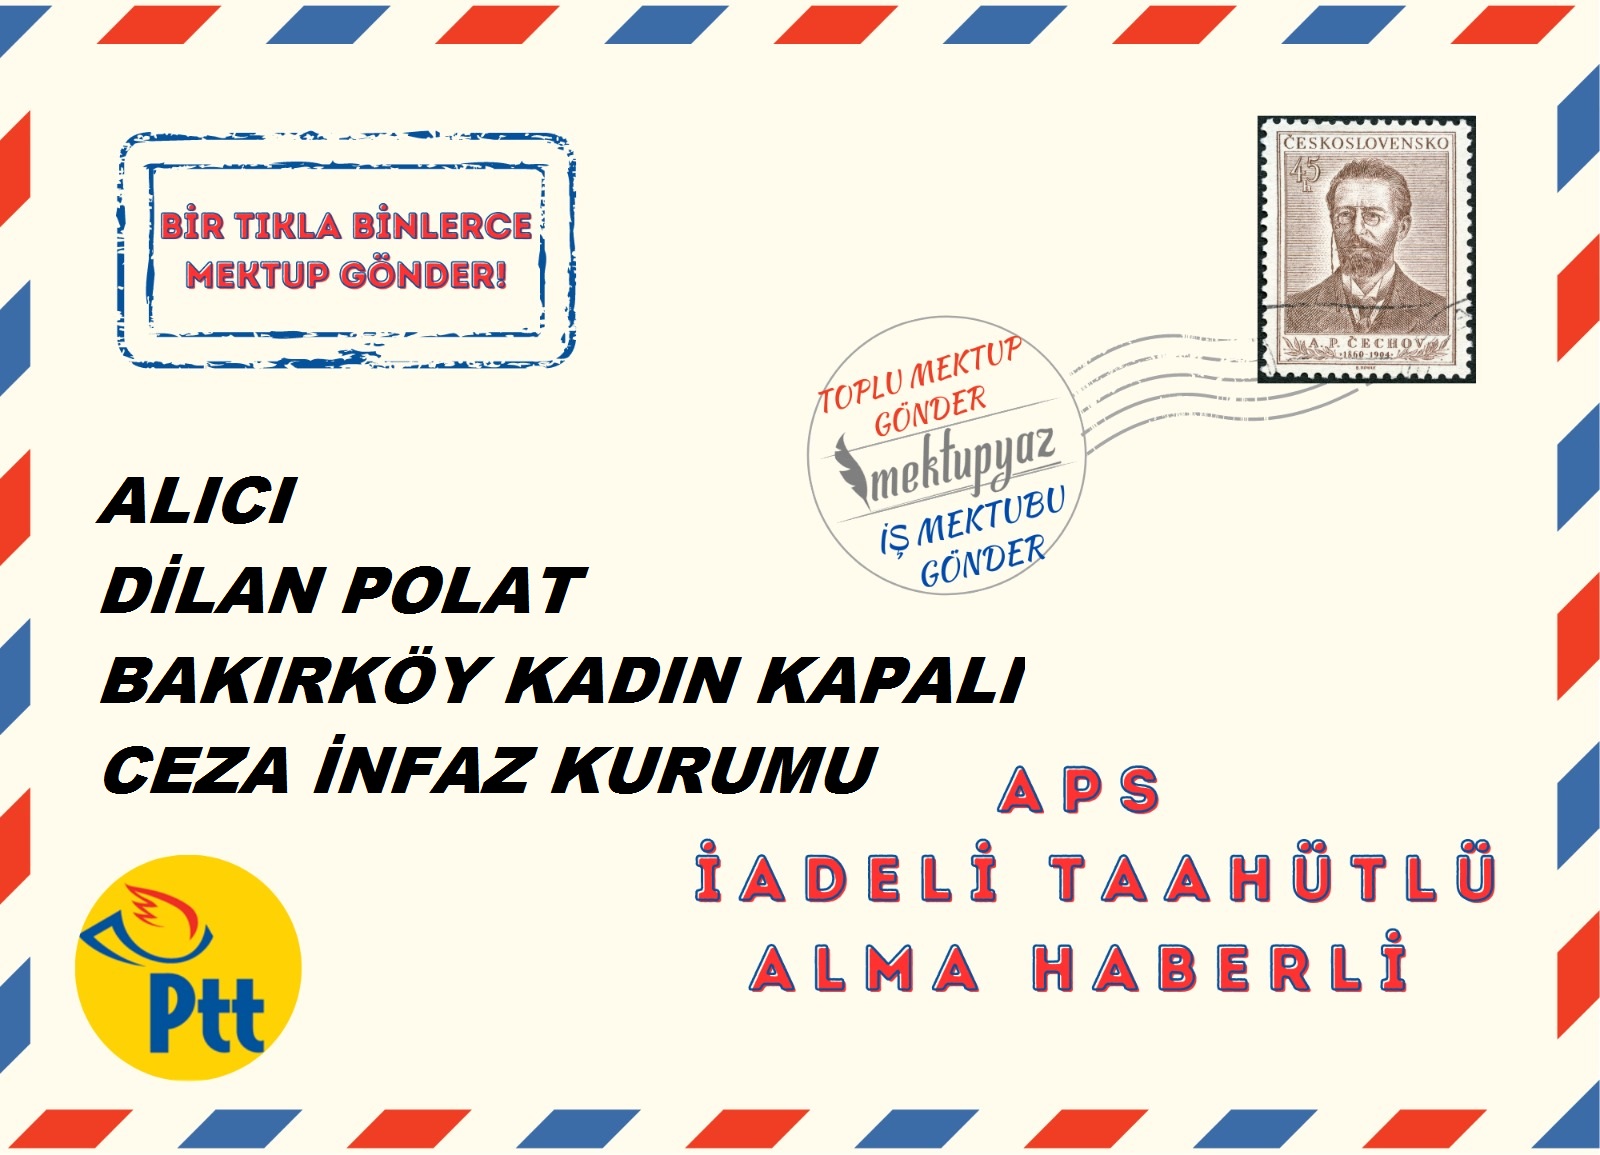 Dilan Polat'a Mektup Yaz ve Gönder